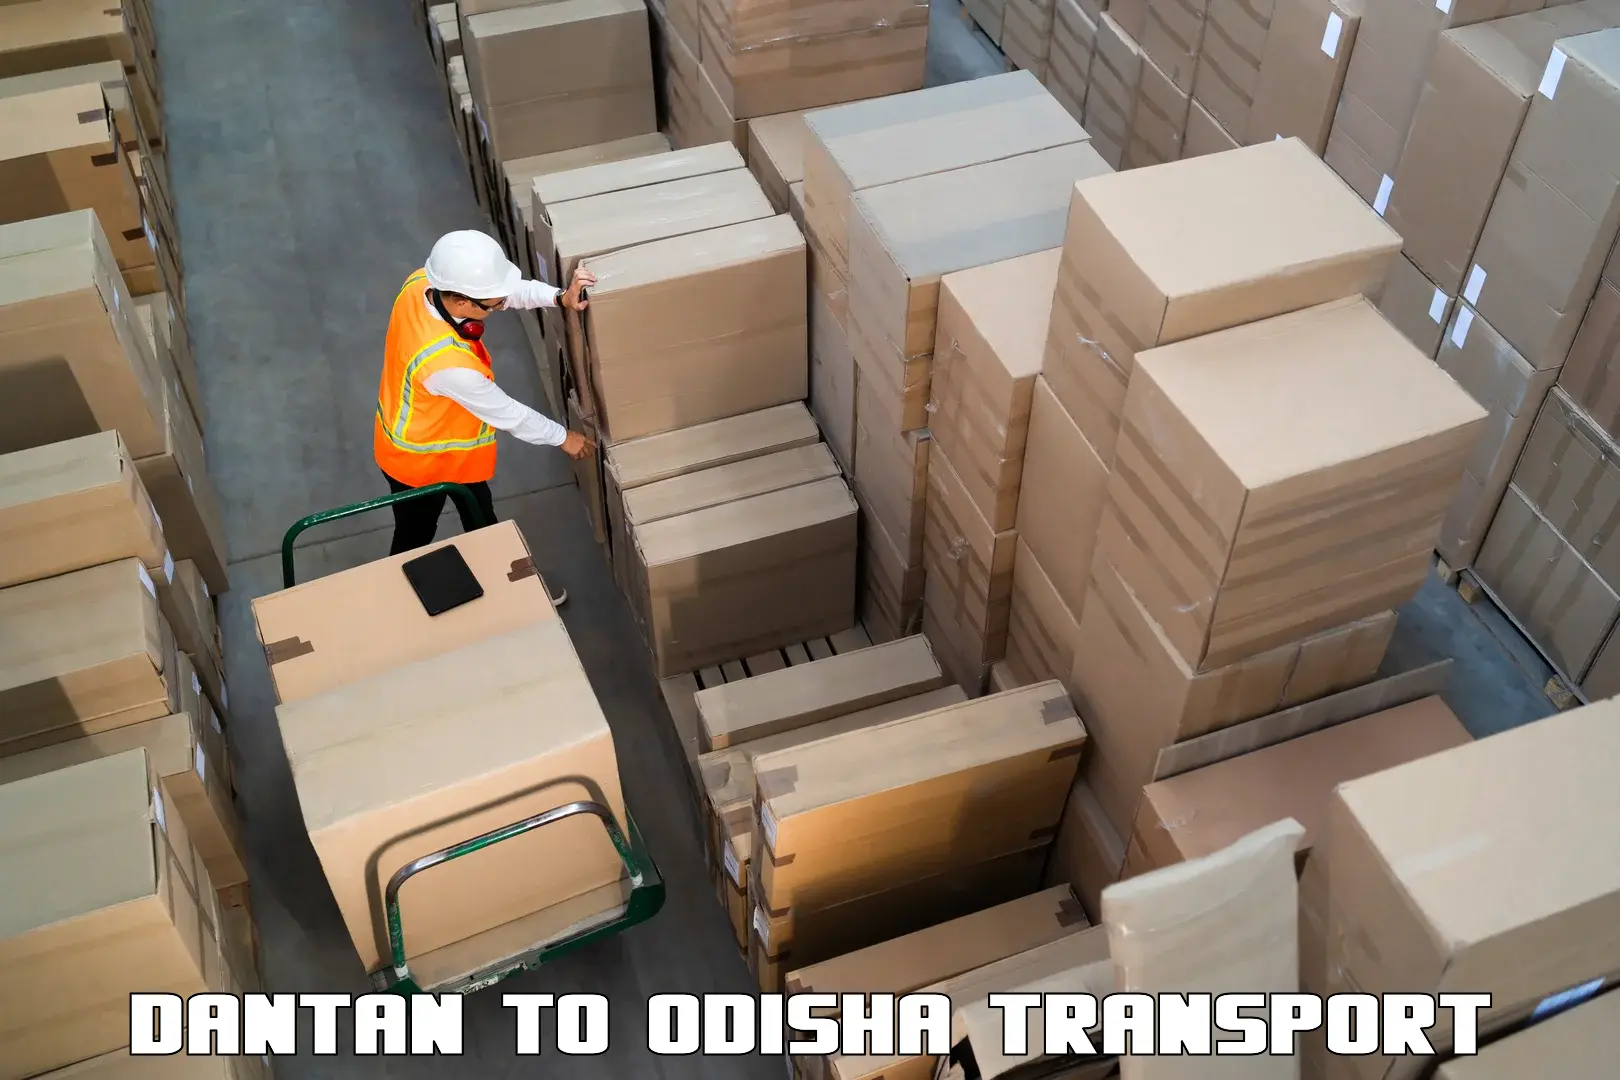 Furniture transport service Dantan to Bahalda